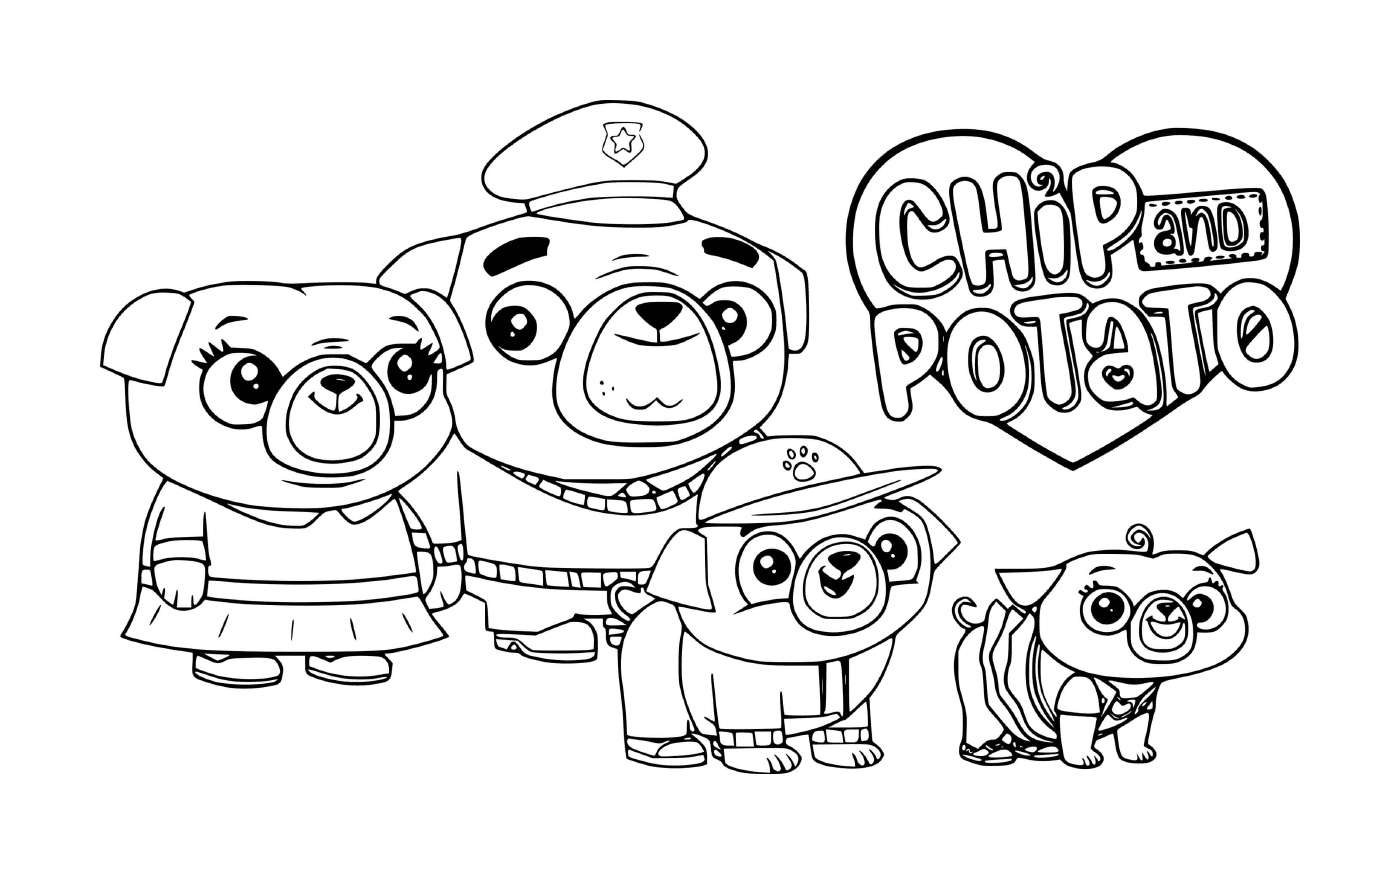  Familia Chip Pug 